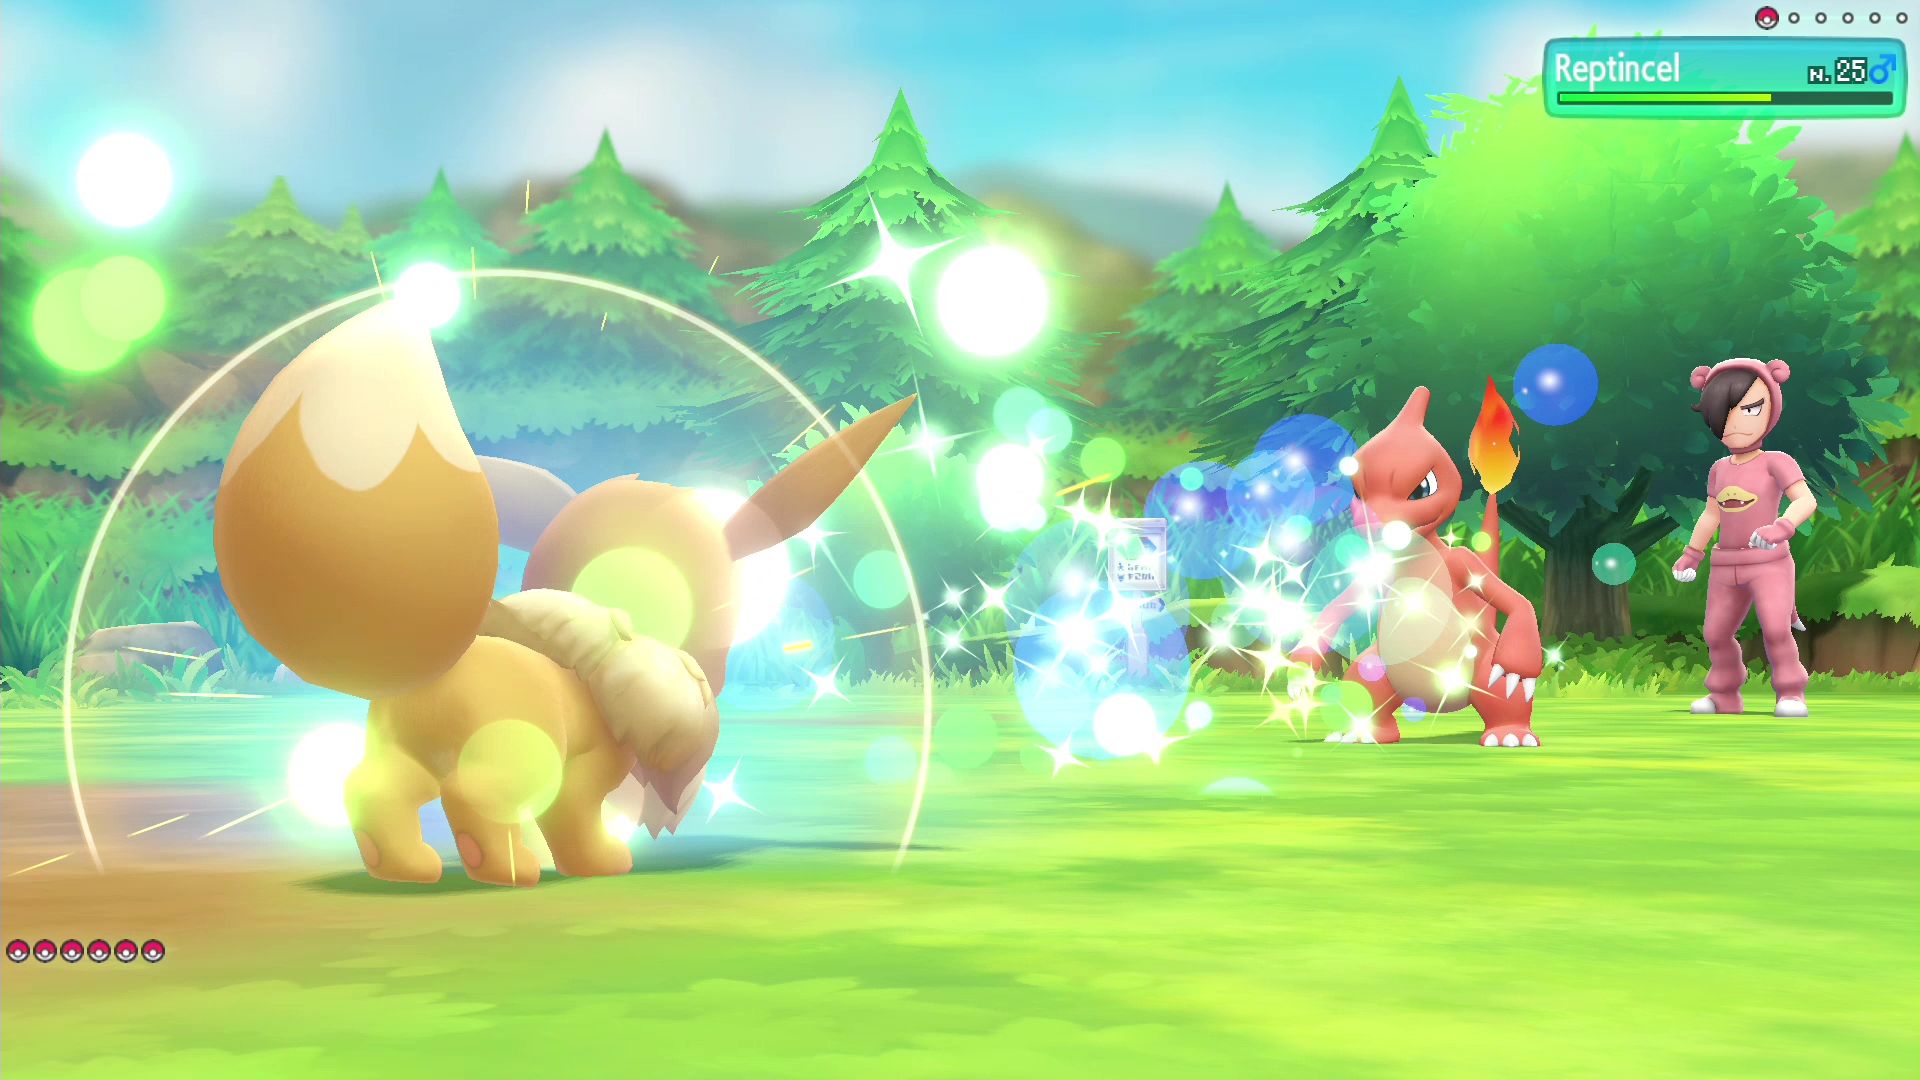 Jogo Pokémon Let's Go, Pikachu! Nintendo Nintendo Switch em Promoção é no  Bondfaro